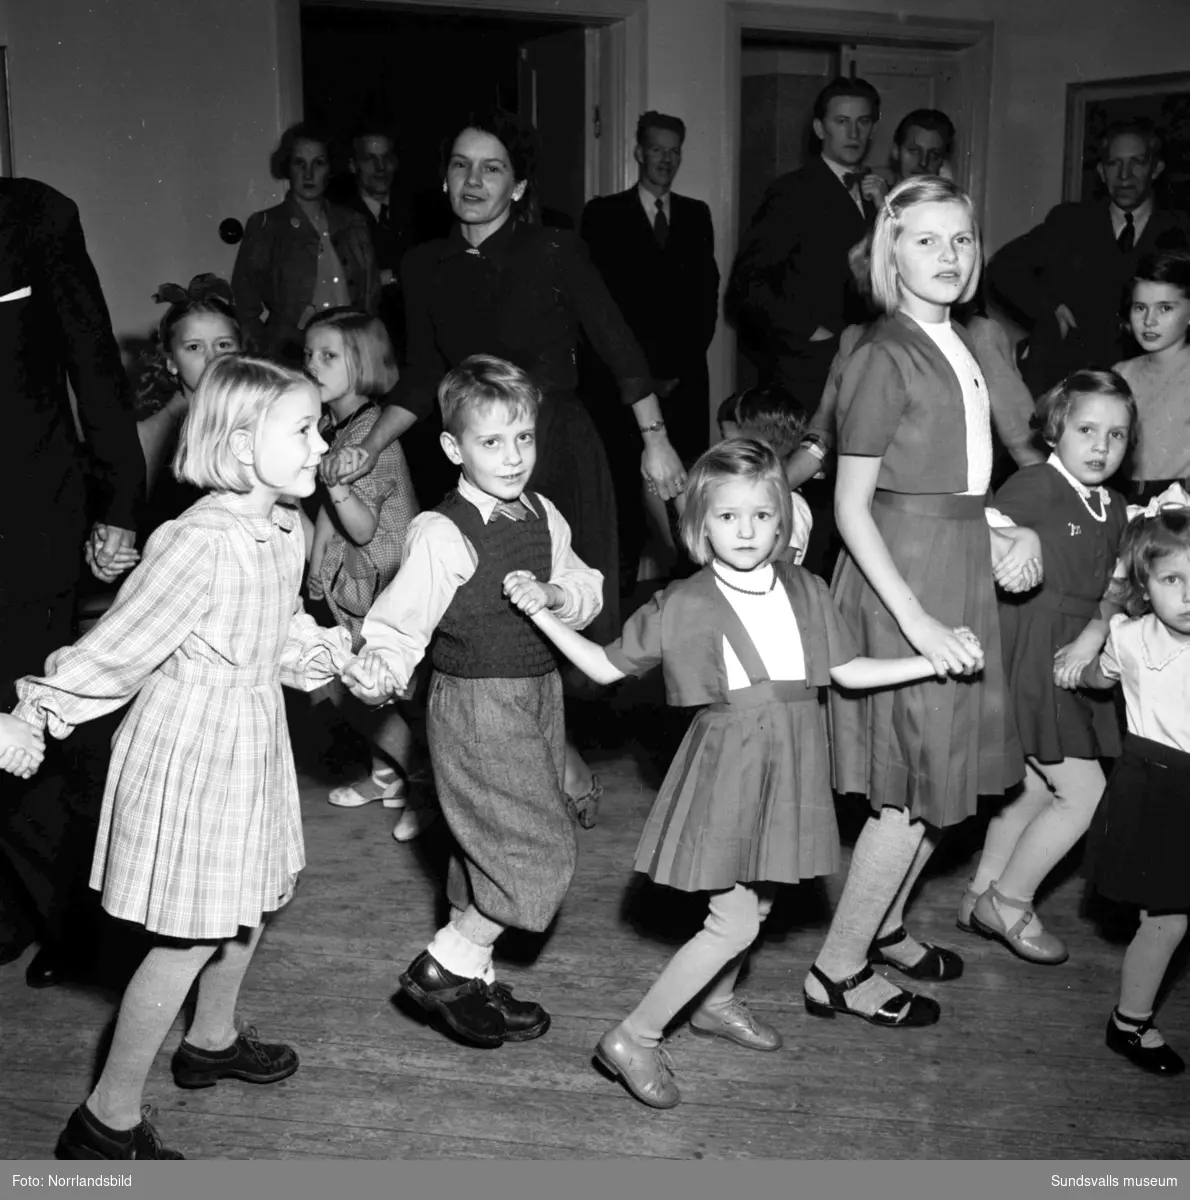 Barnjulfest, julgransplundring, i Sundsvalls Folkets hus. En liten flicka spelar dragspel och långdans med glada barn.